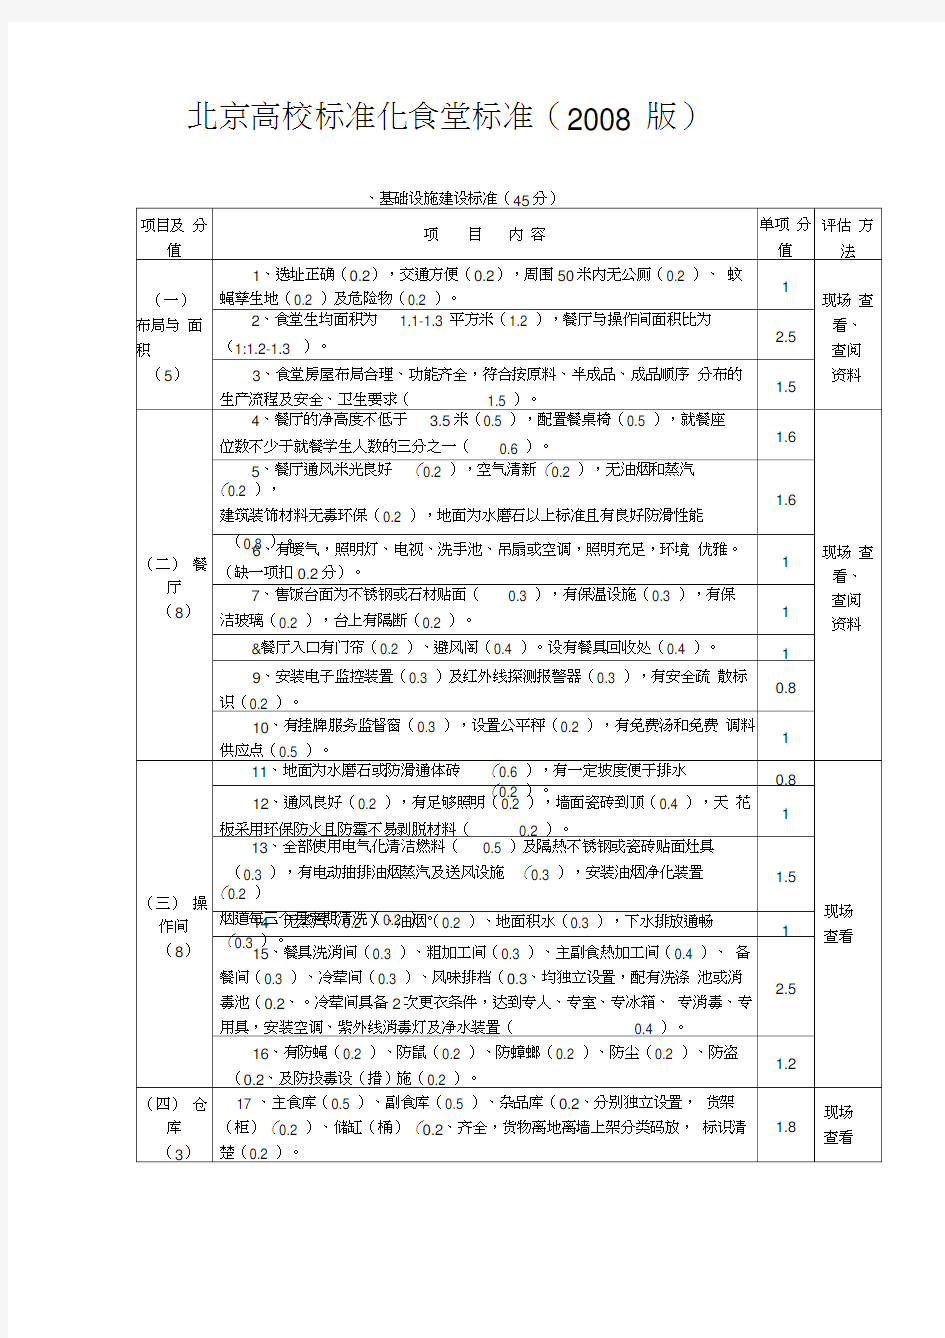 北京高校标准化食堂标准(2008版)讲解